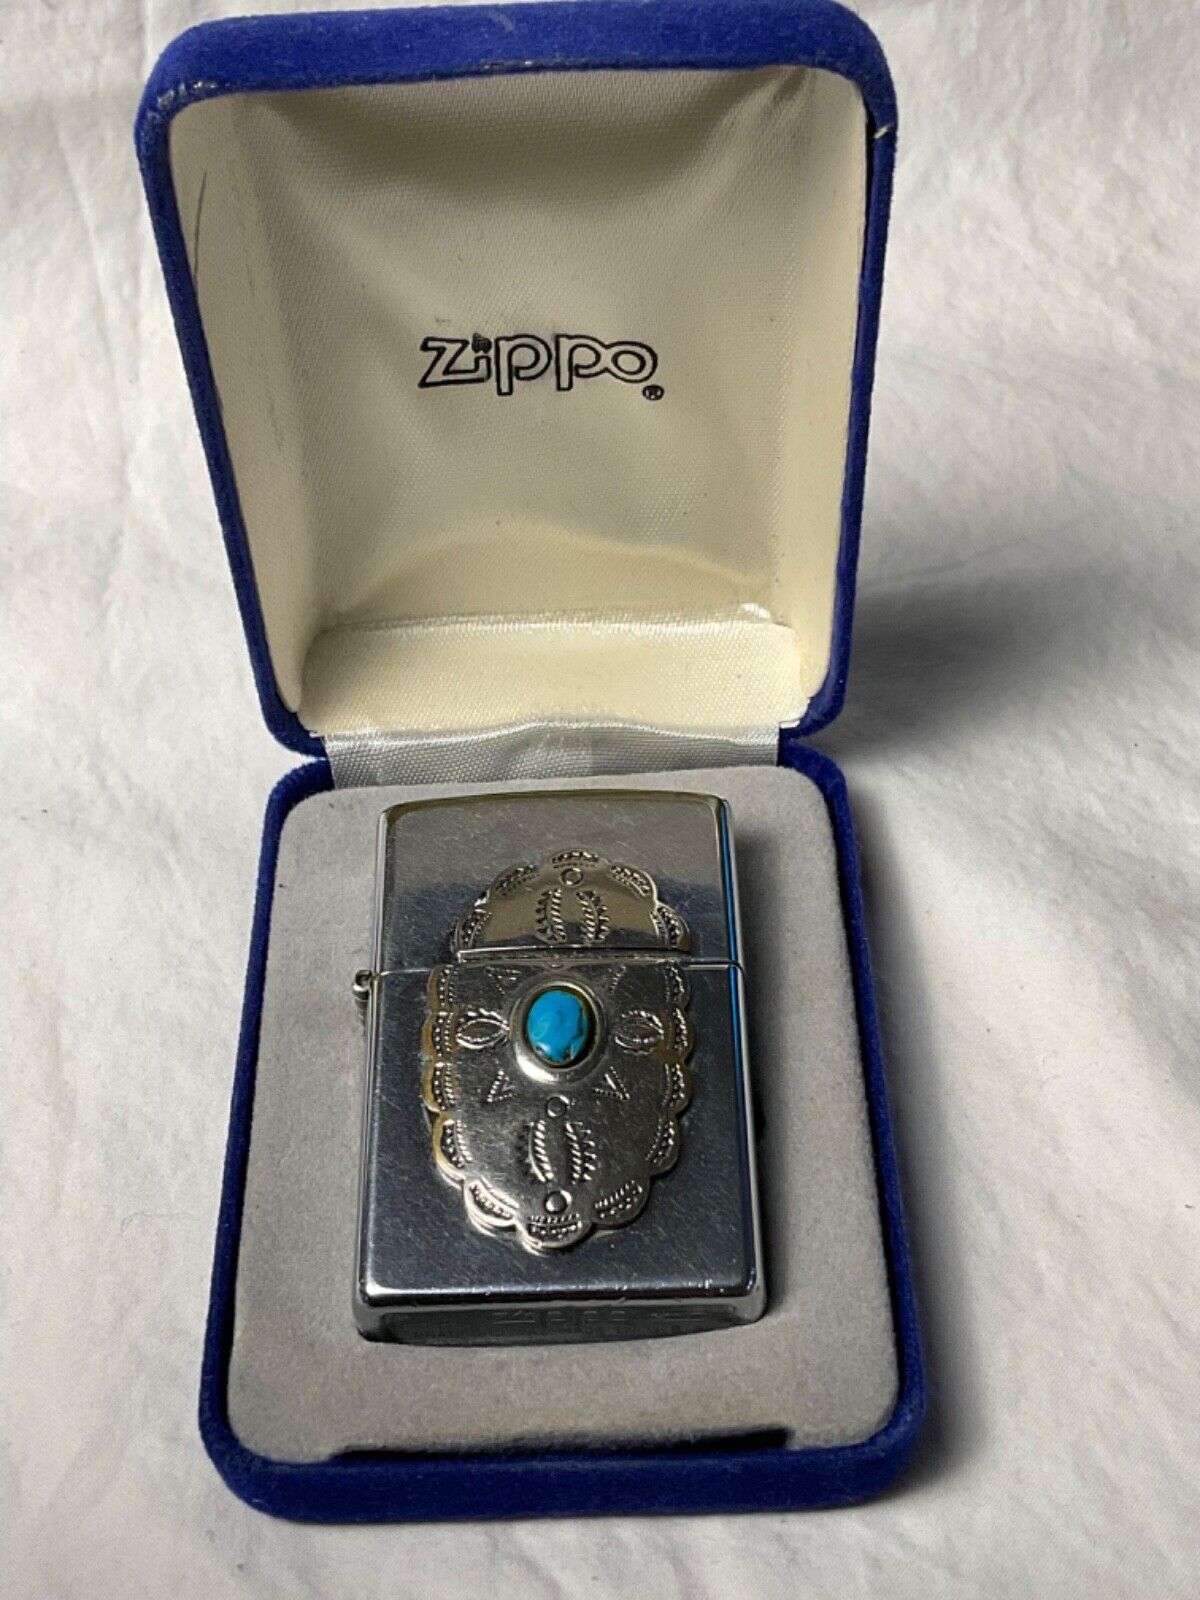 1996 ZIPPO LIGHTER 397 CHEROKEE Original Box A XVI MADE IN USA Silver